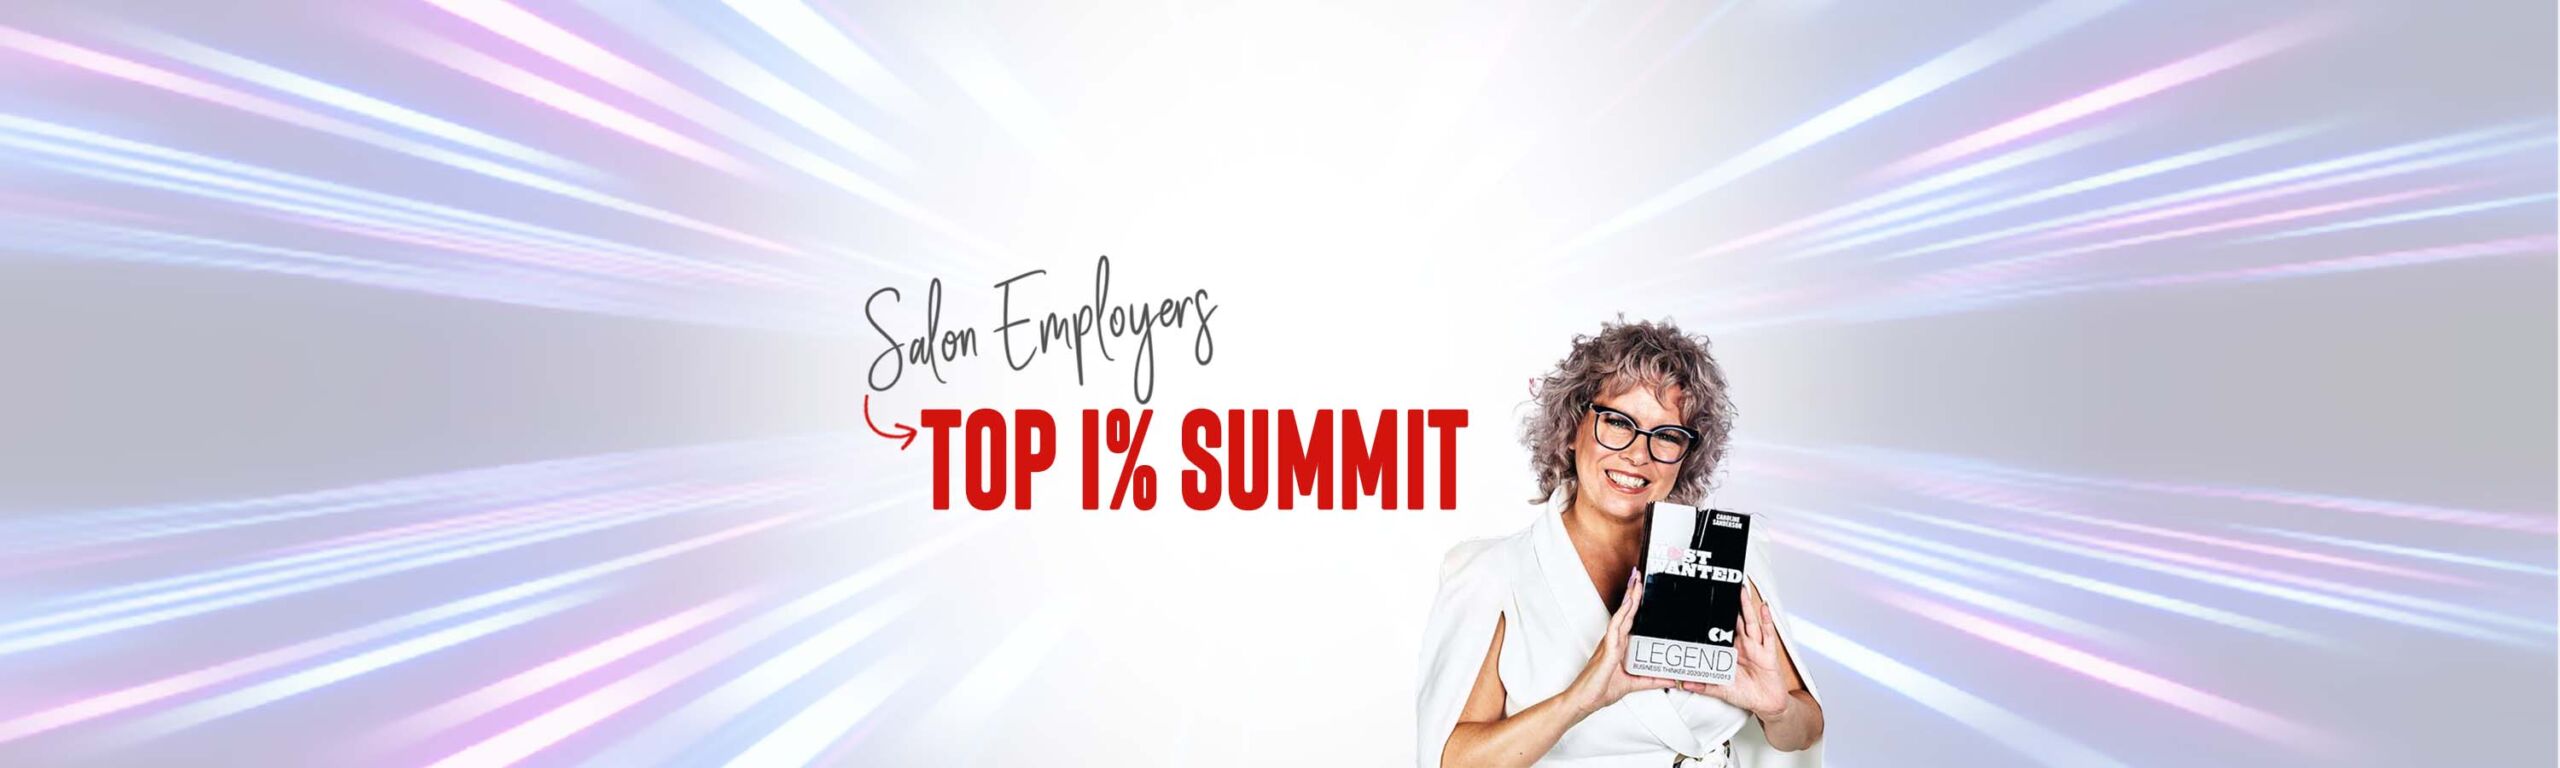 Salon Employers Summit